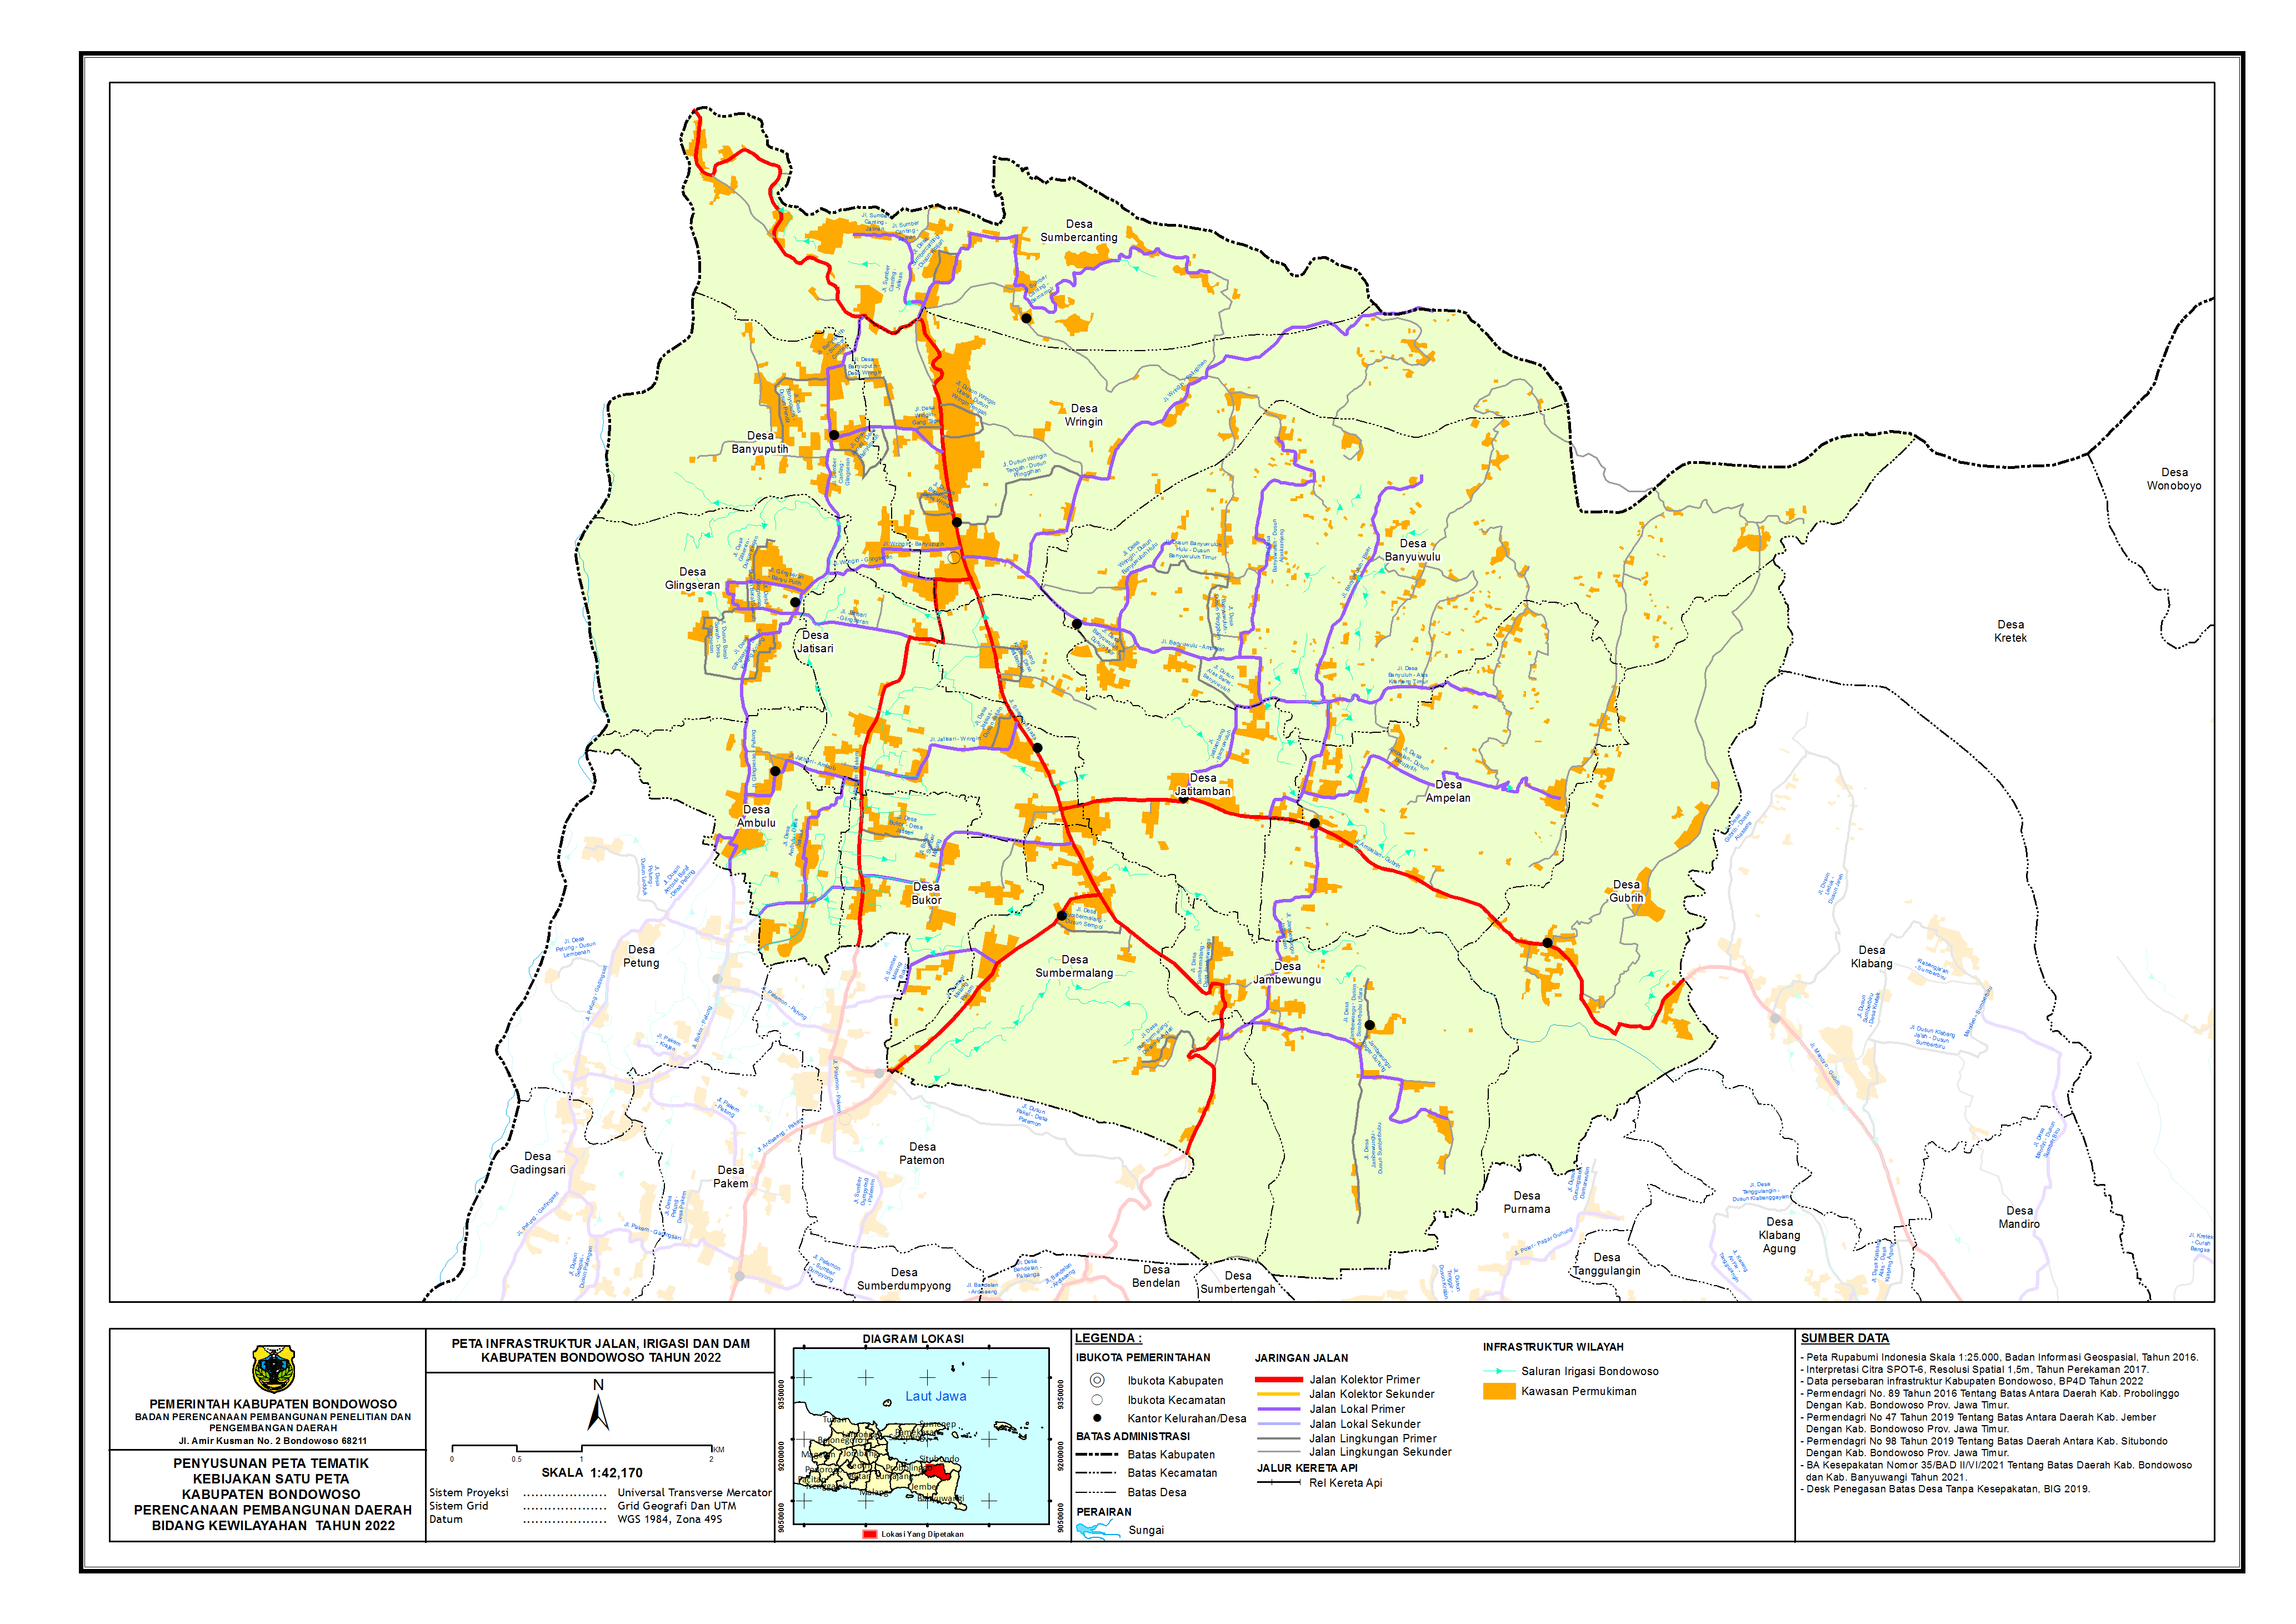 Peta Infrastruktur Wilayah Kecamatan Wringin.png